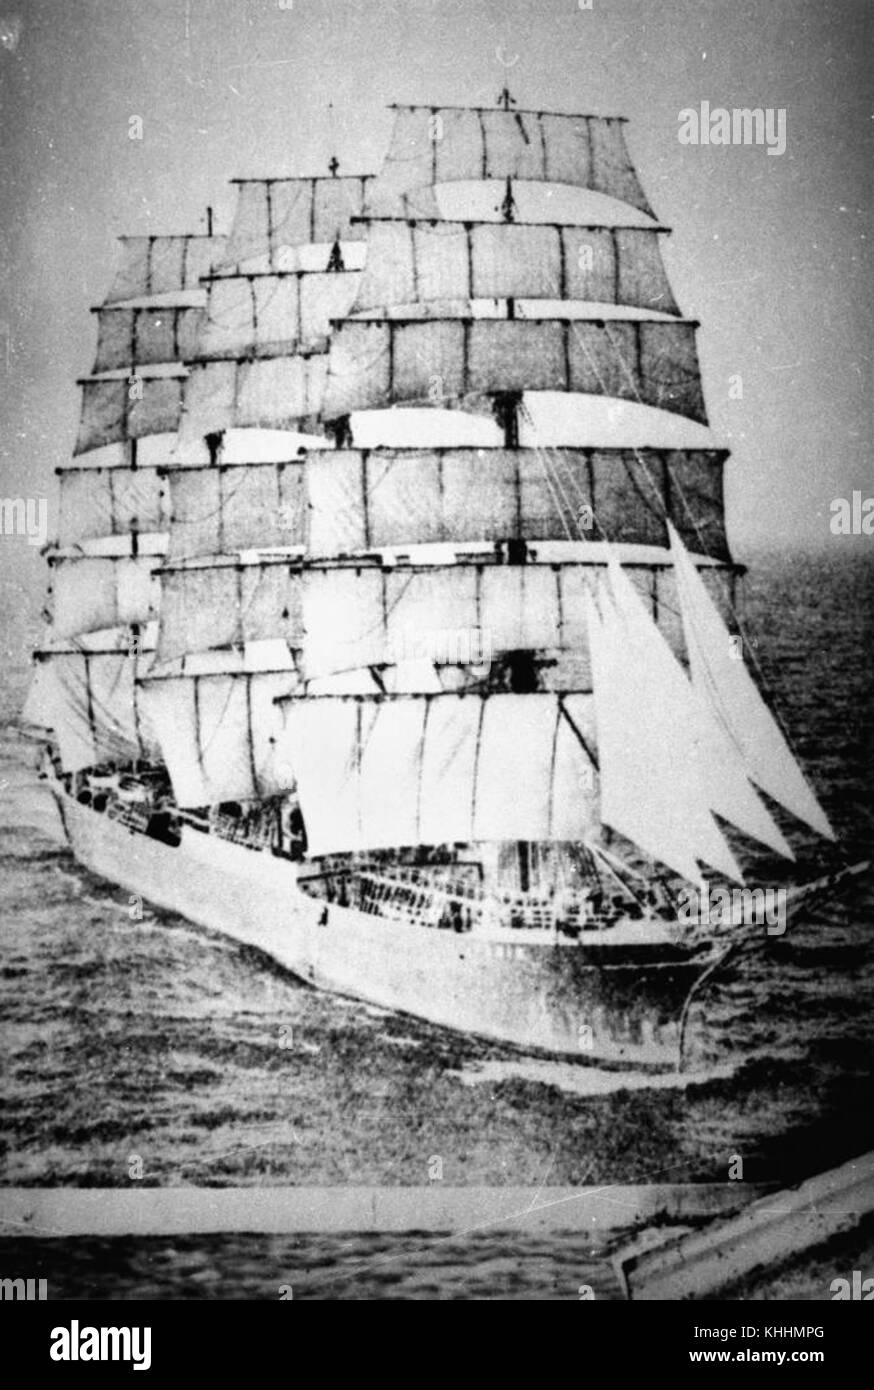 1 171539 Pamir (ship) Stock Photo